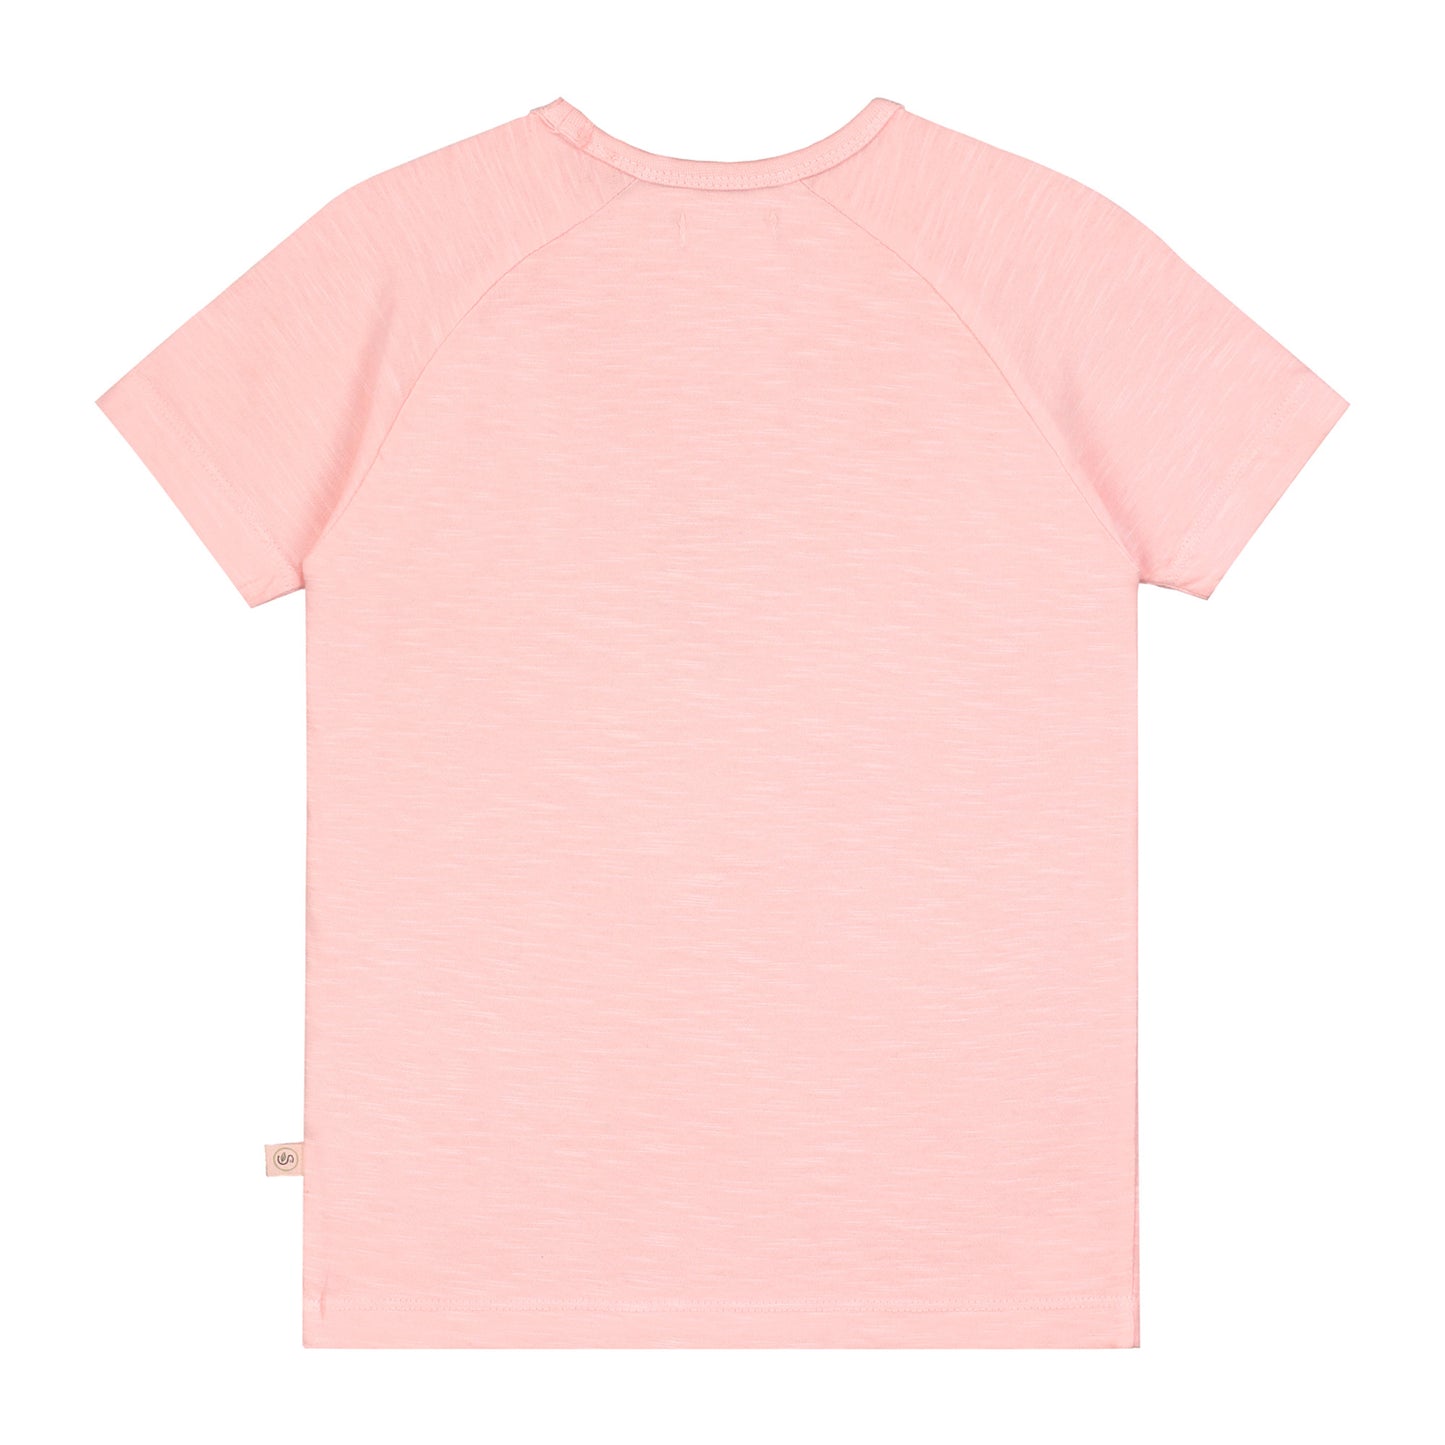 Kontinent-Ring-Mädchen-T-Shirt